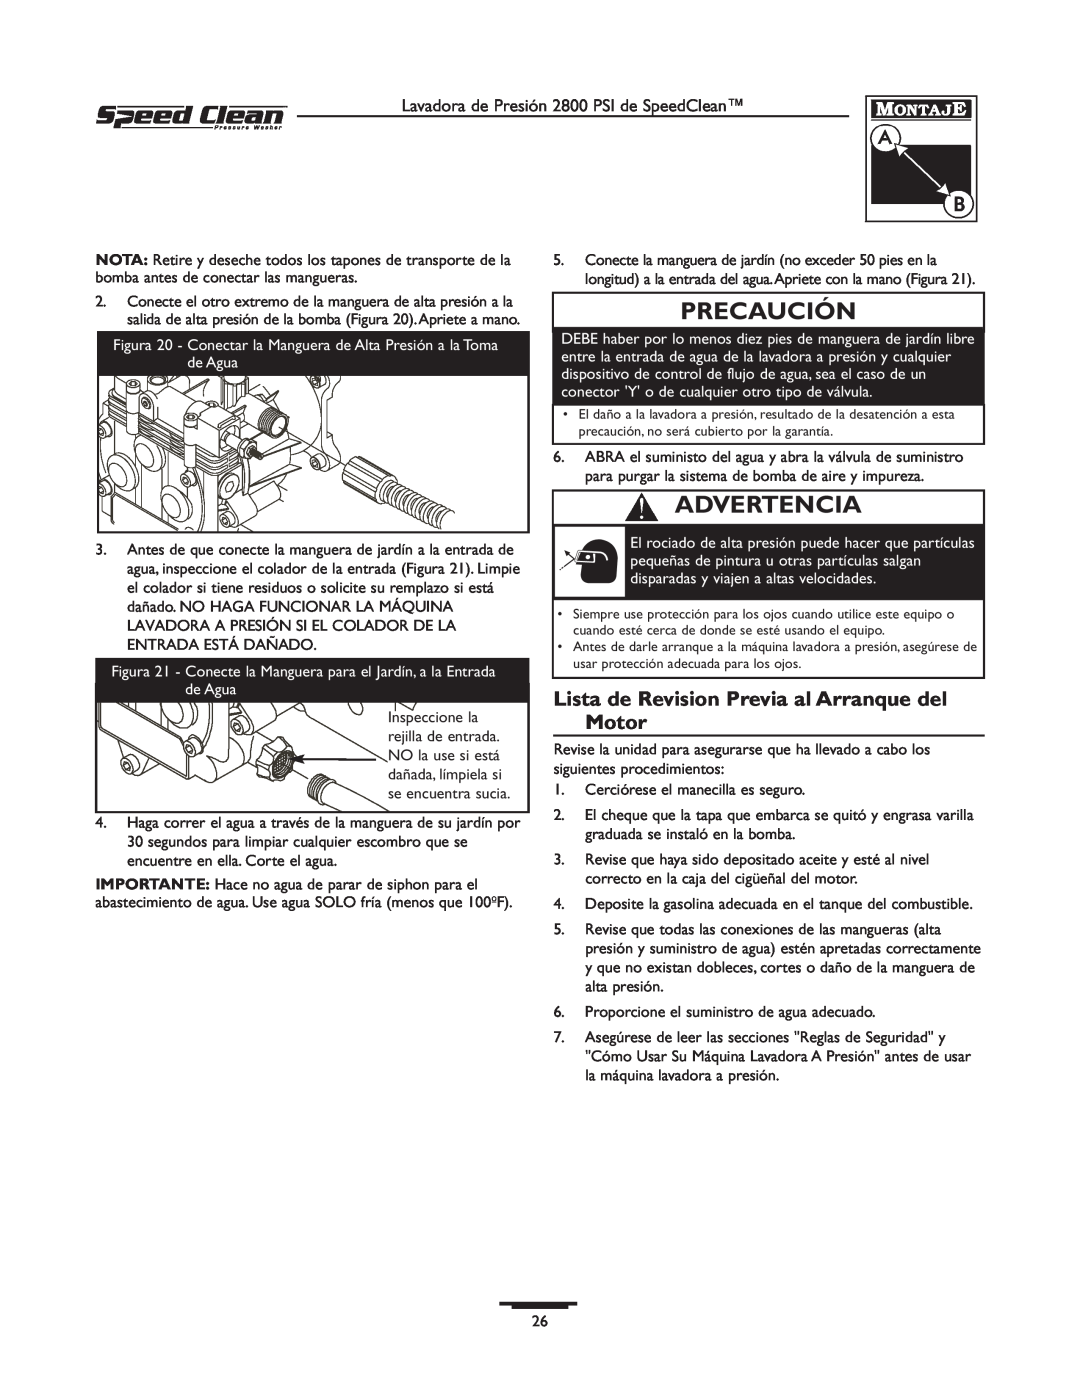 Briggs & Stratton 020212-0 owner manual Lista de Revision Previa al Arranque del Motor, Precaución, Advertencia 